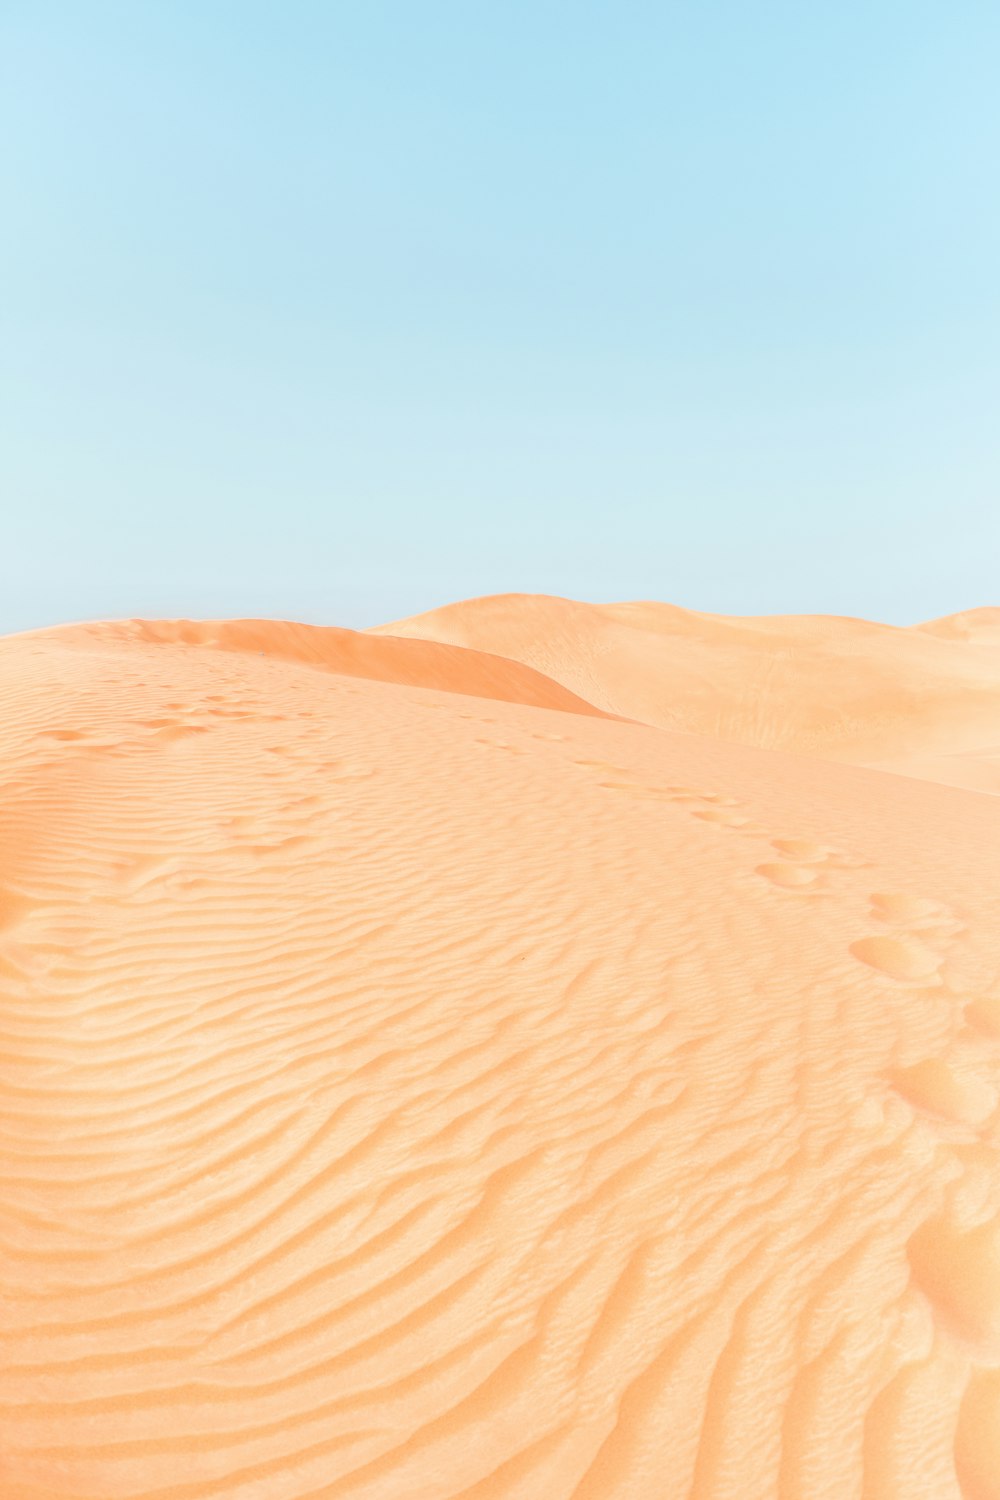 Wüste während des Tages